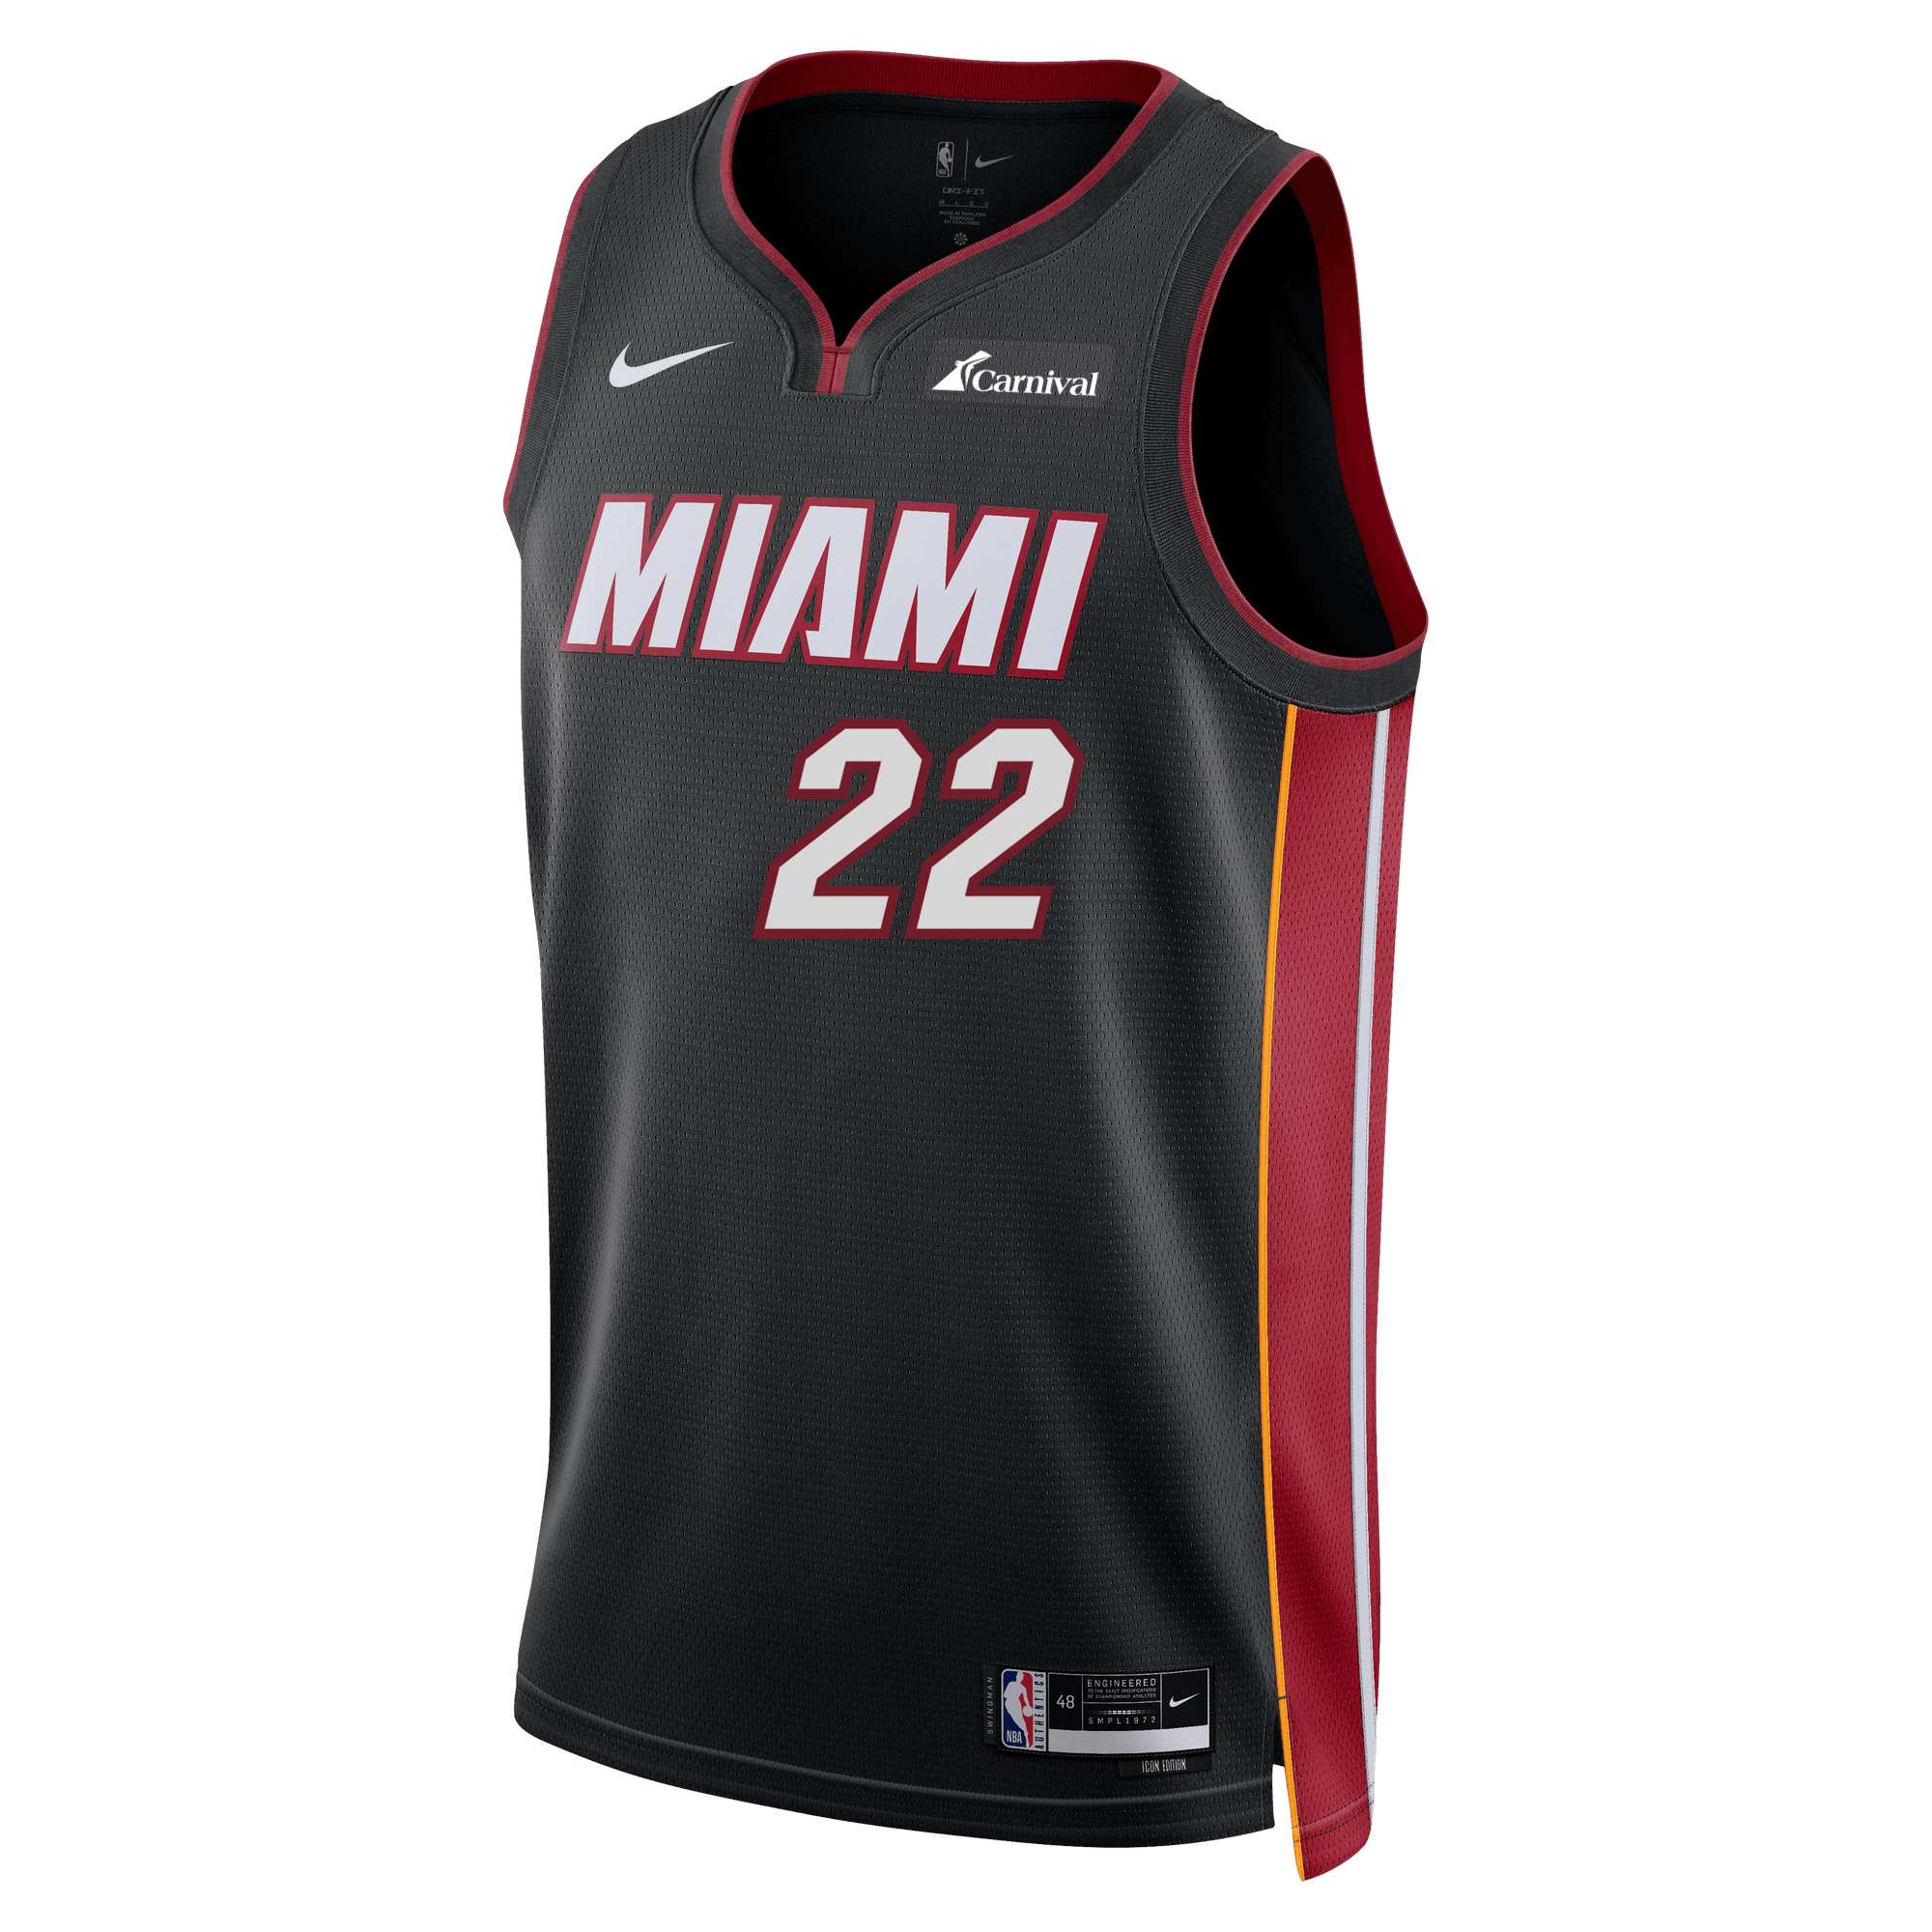 Personalized Nike Miami HEAT ViceVersa Youth Swingman Jersey